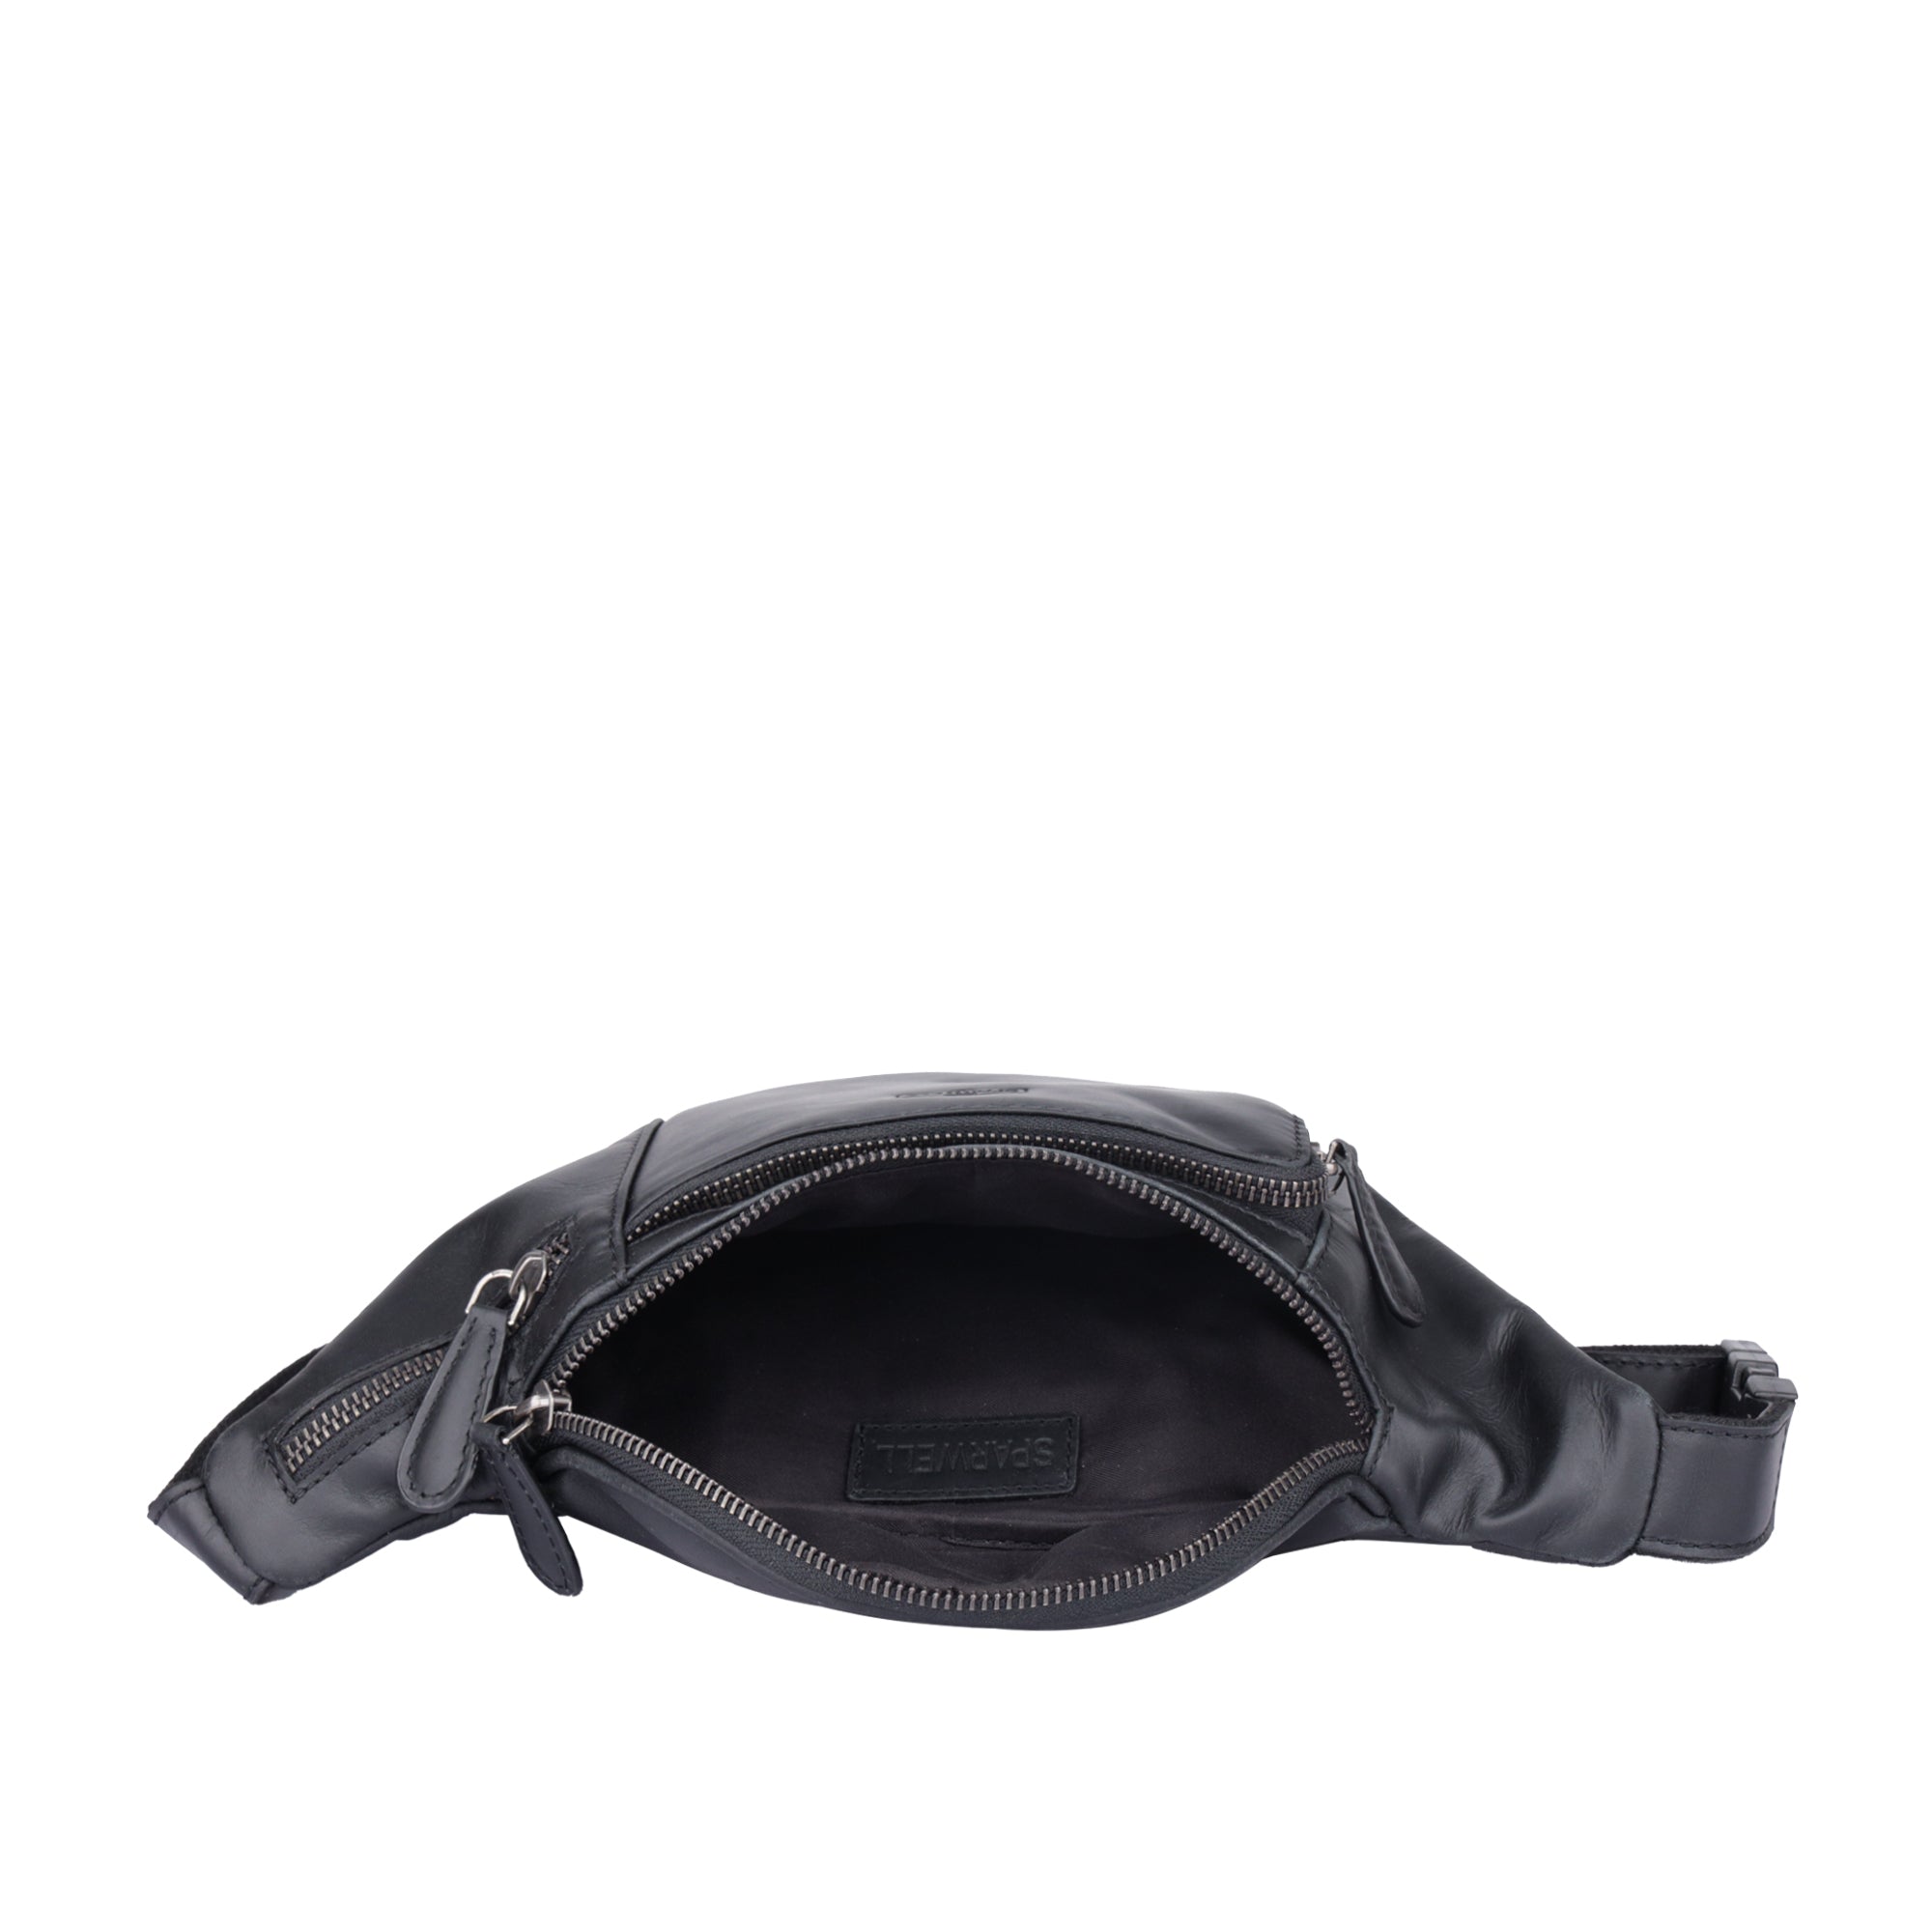 Steve - leather belt bag / crossbody